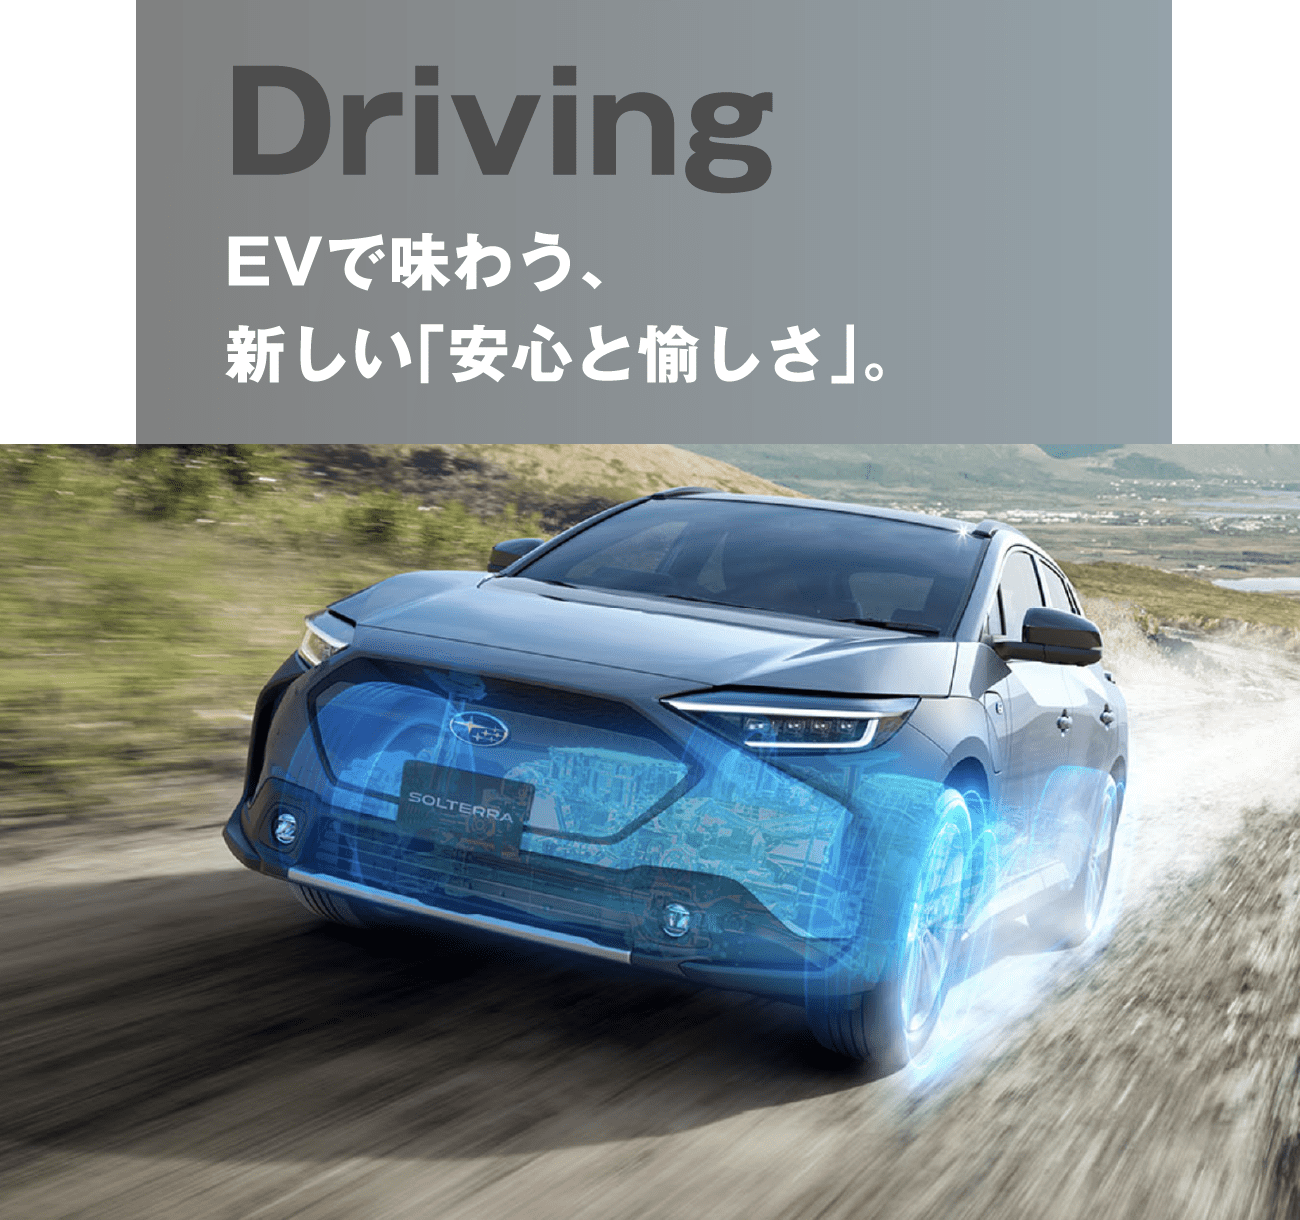 Driving EVで味わう、新しい「安心と愉しさ」。